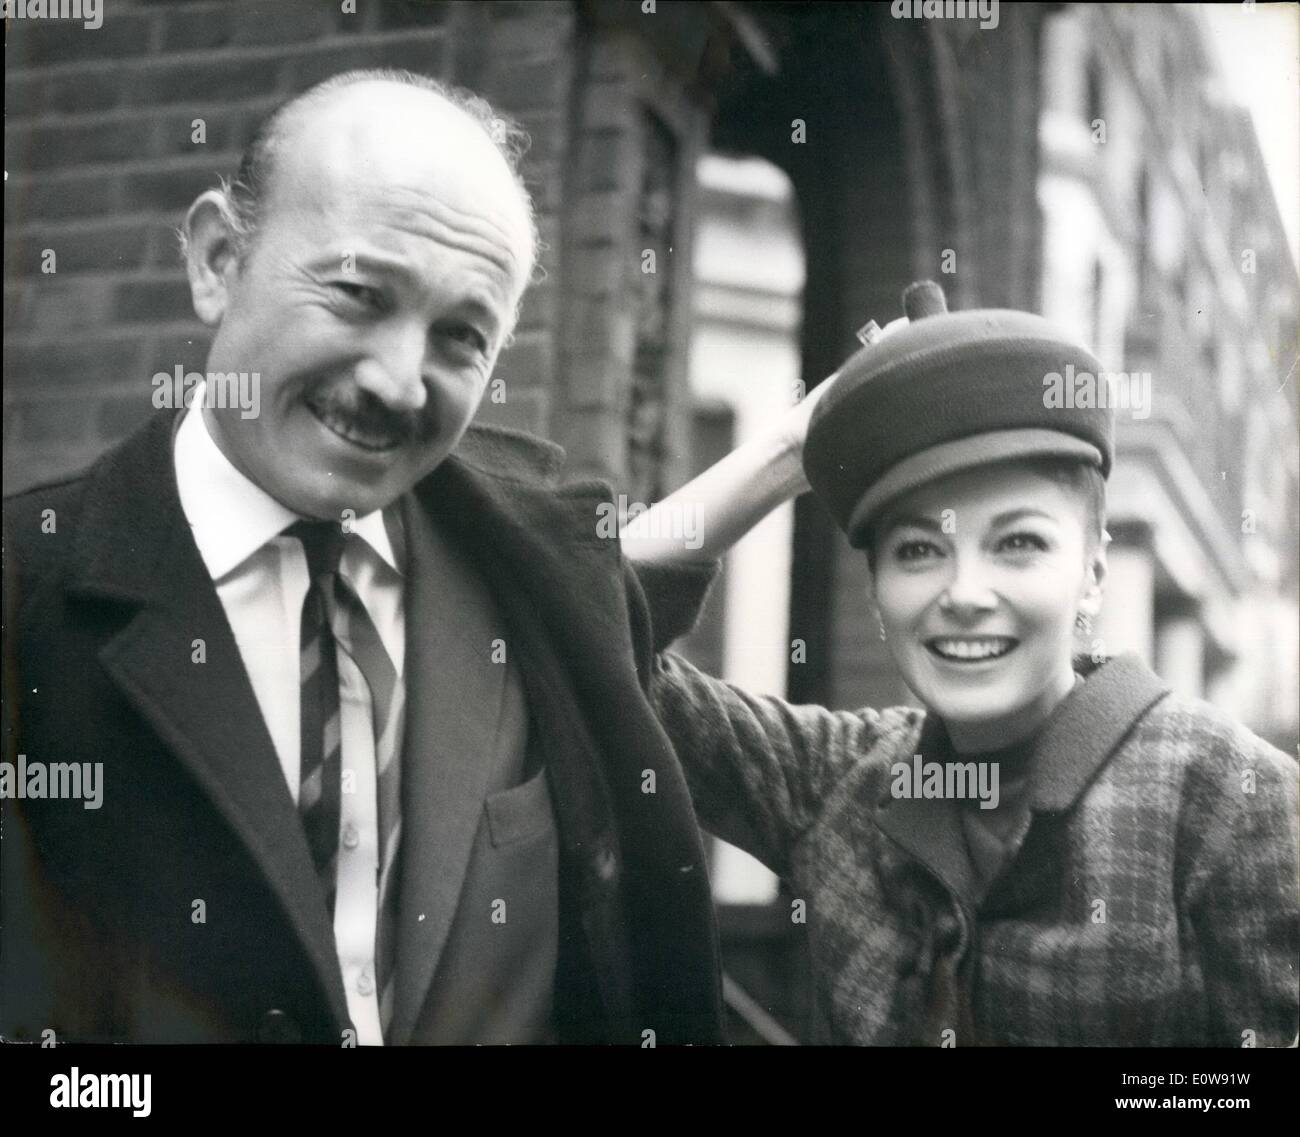 Febbraio 02, 1962 - Pier Angeli di sposarsi a Londra . L'attrice Pier Angeli è di sposare il jazz italiano il compositore e direttore Armando Trovajoli , invecchiato 45, a Londra. La foto mostra il close up del giovane oggi a Londra. Foto Stock